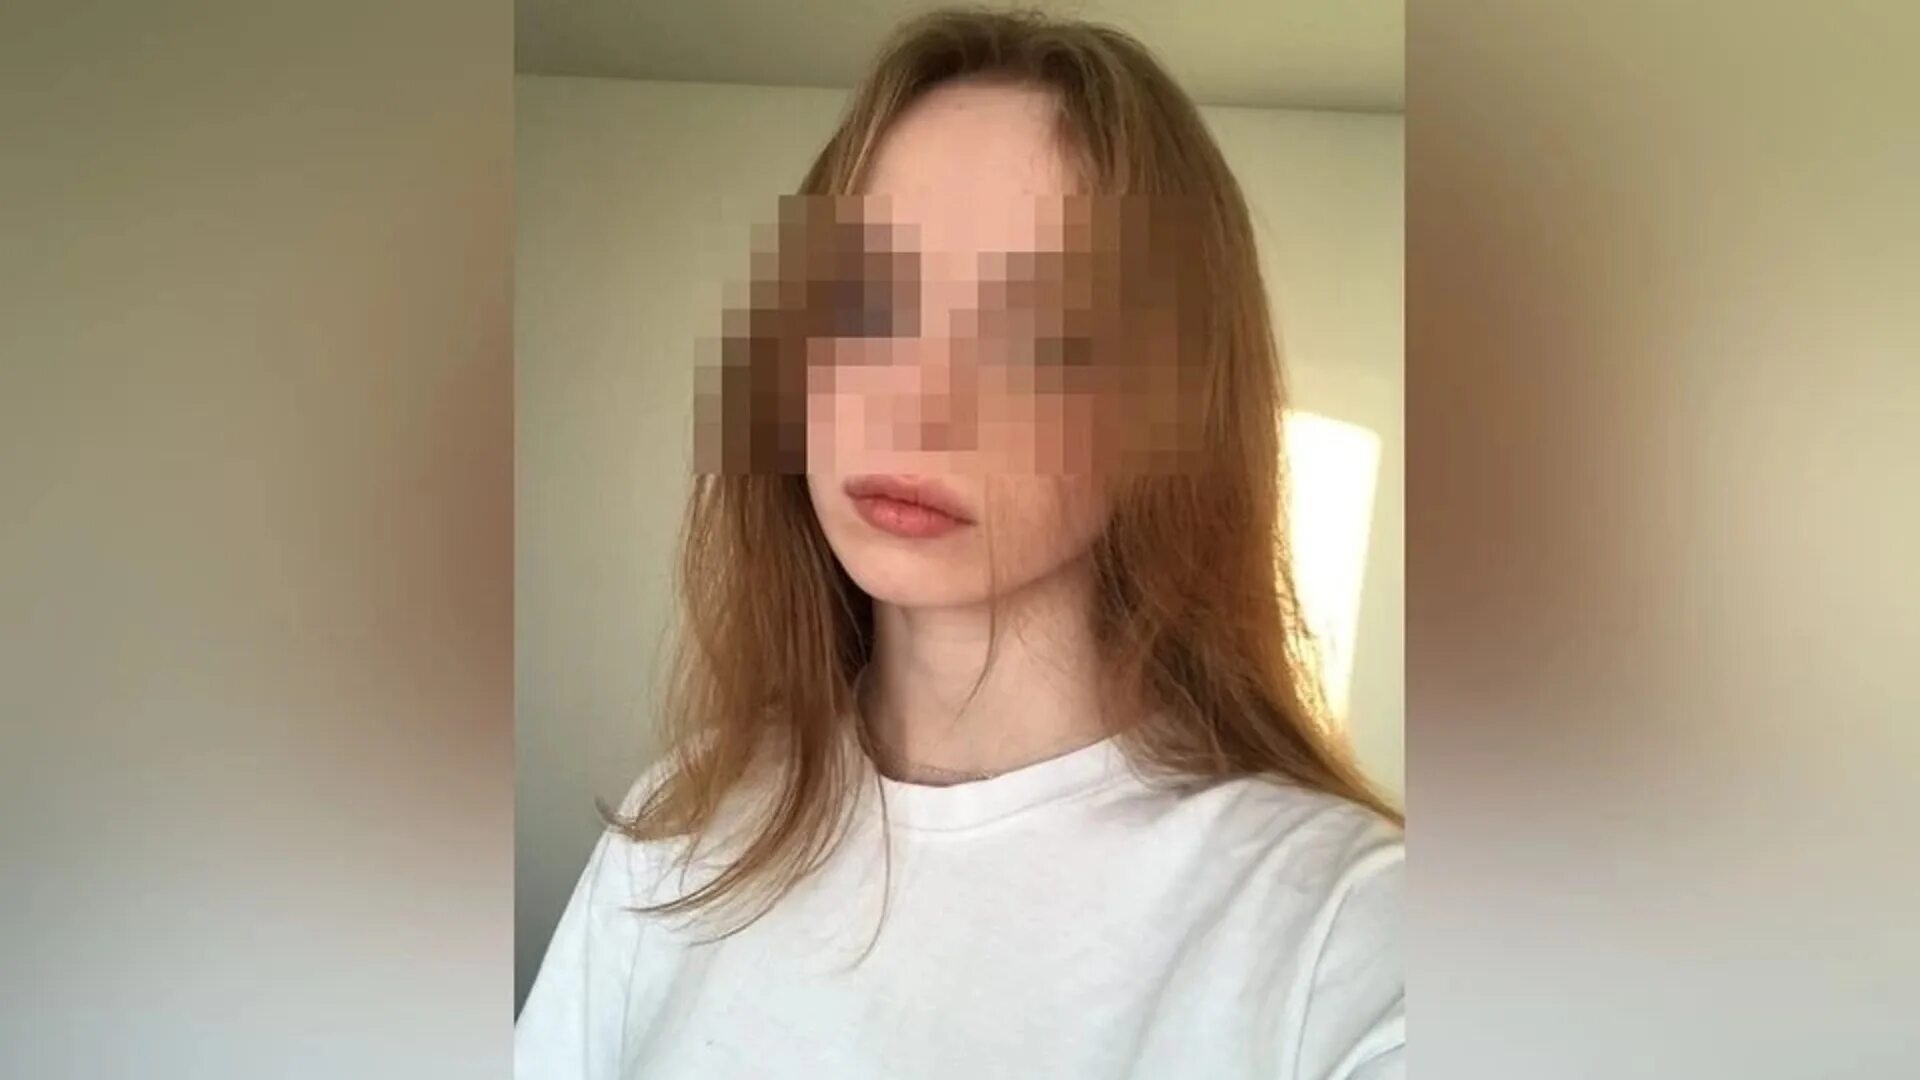 Убитая 17 летняя девушка в Новосибирске. 19 Летняя девушка.